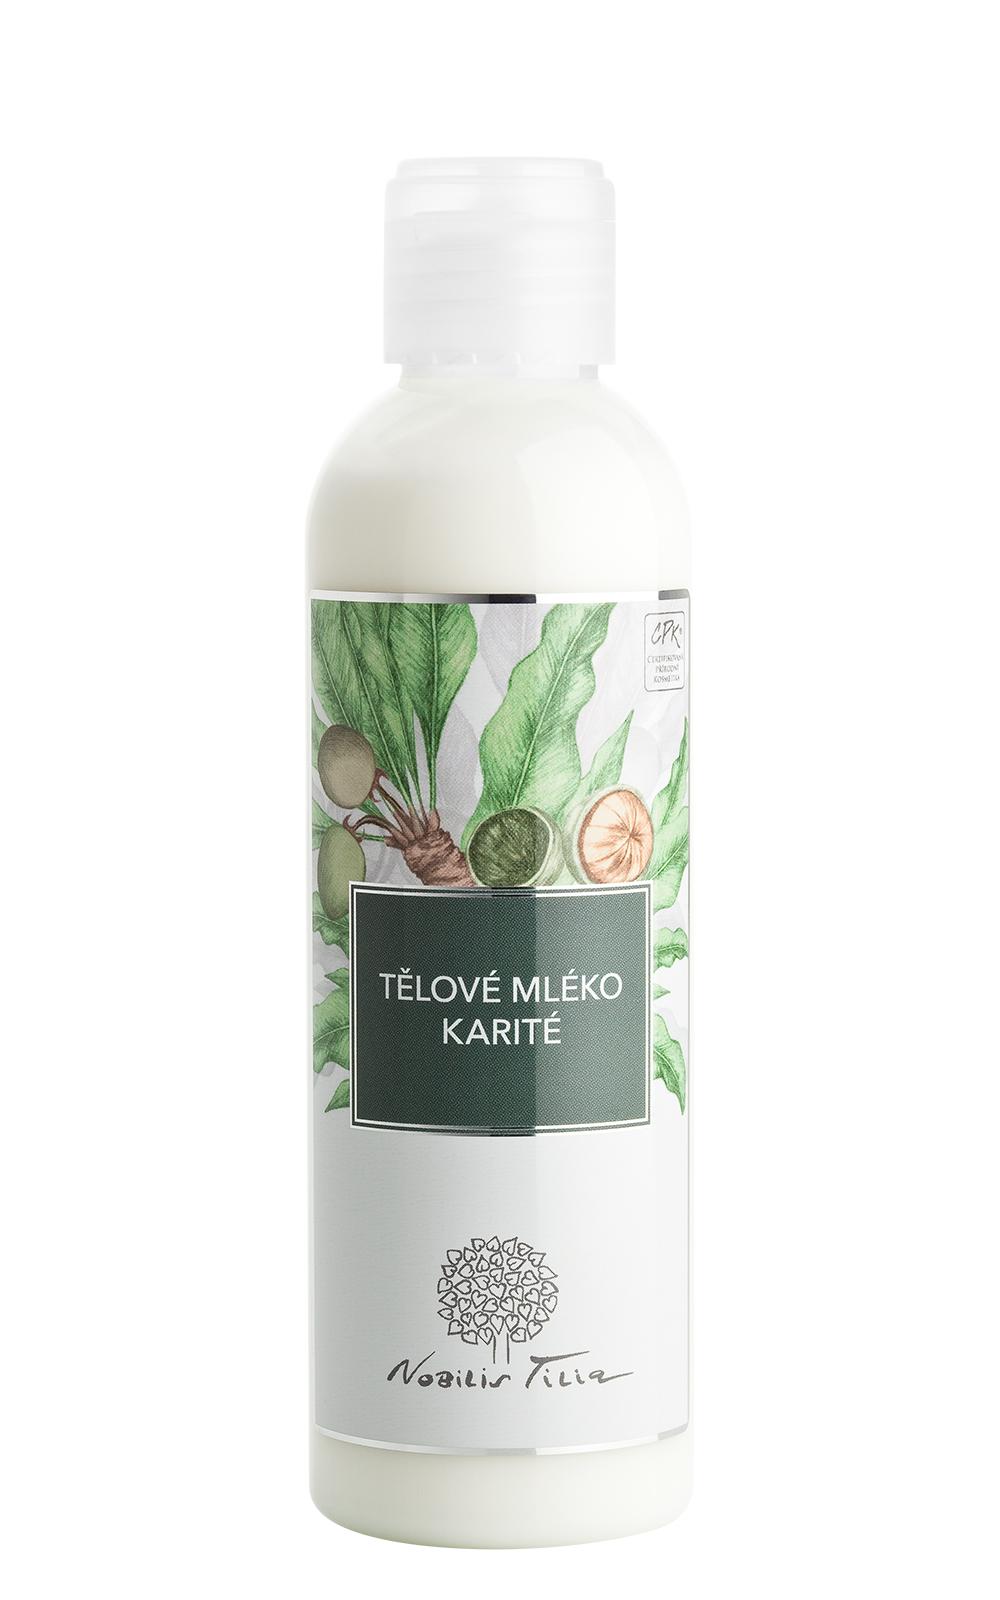 Tělové mléko Karité 200ml - Nobilis Tilia